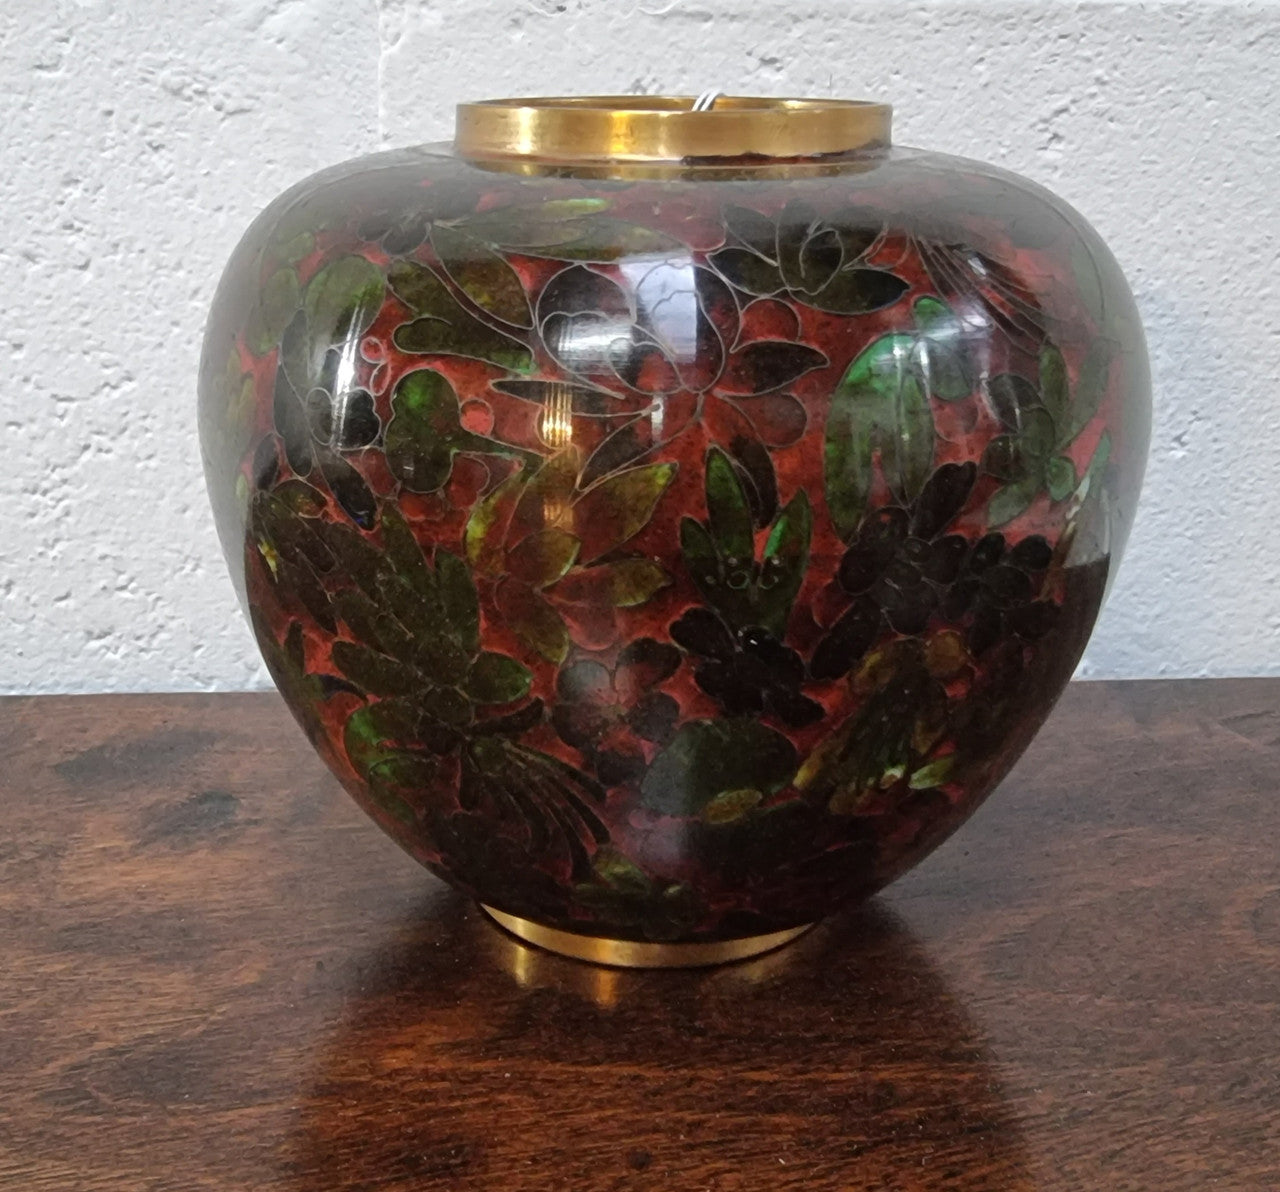 Vintage Cloisonné Vase With a Great Colour Combination